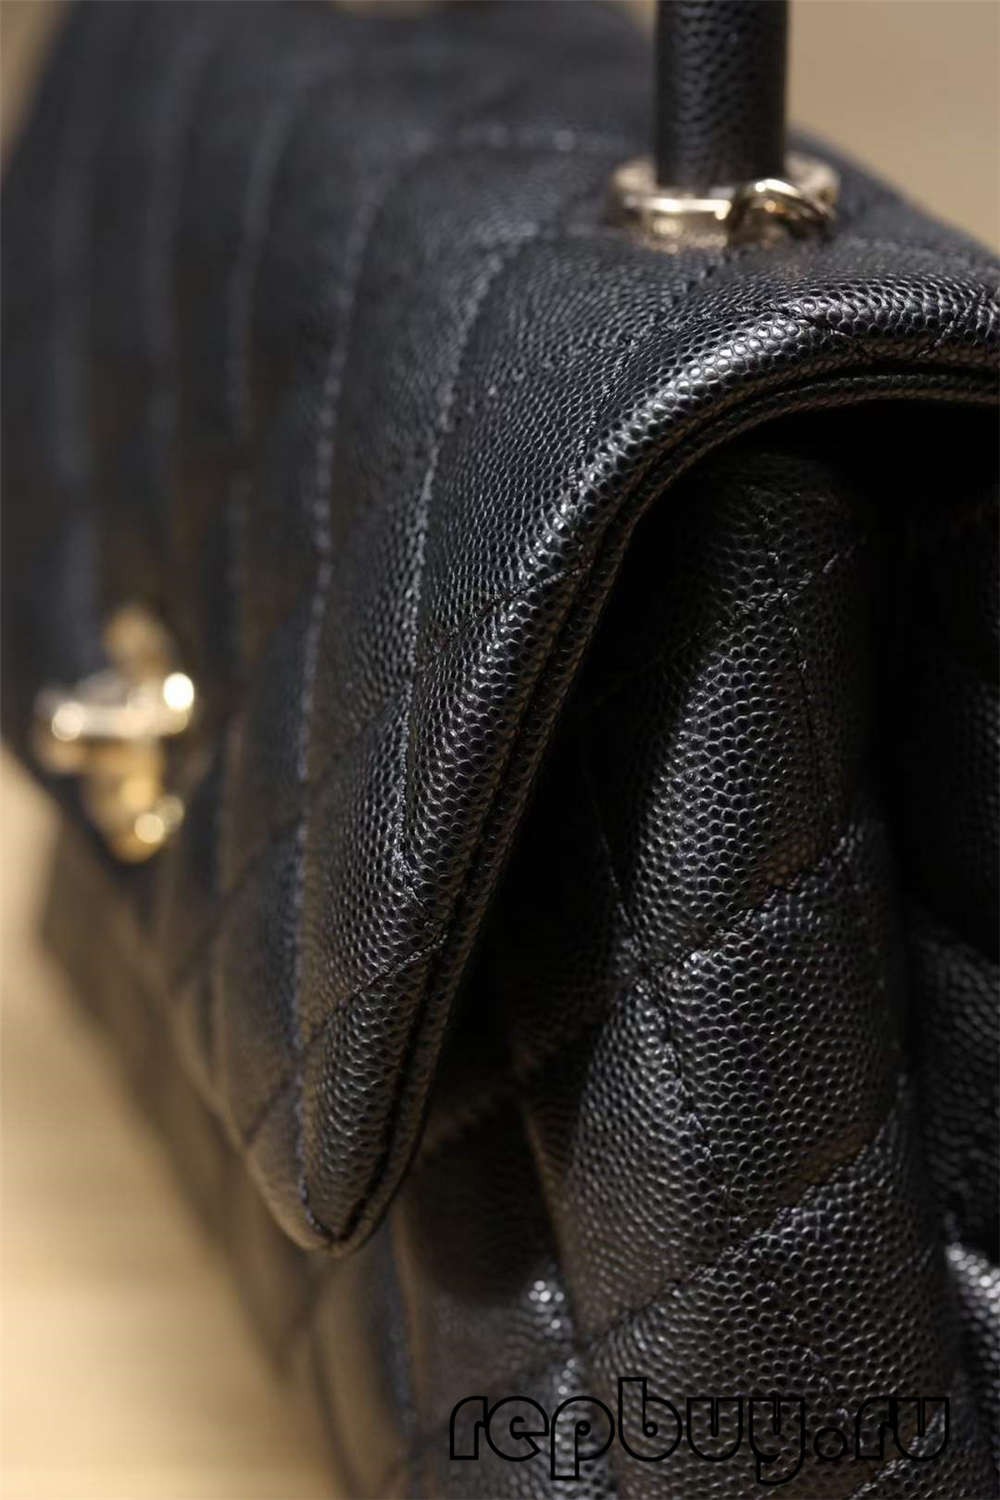 Chanel Coco Handle Top Replica Handbag Black Gold Buckle Look (Cập nhật năm 2022) -Chất lượng tốt nhất Túi Louis Vuitton giả Cửa hàng trực tuyến, túi thiết kế bản sao ru